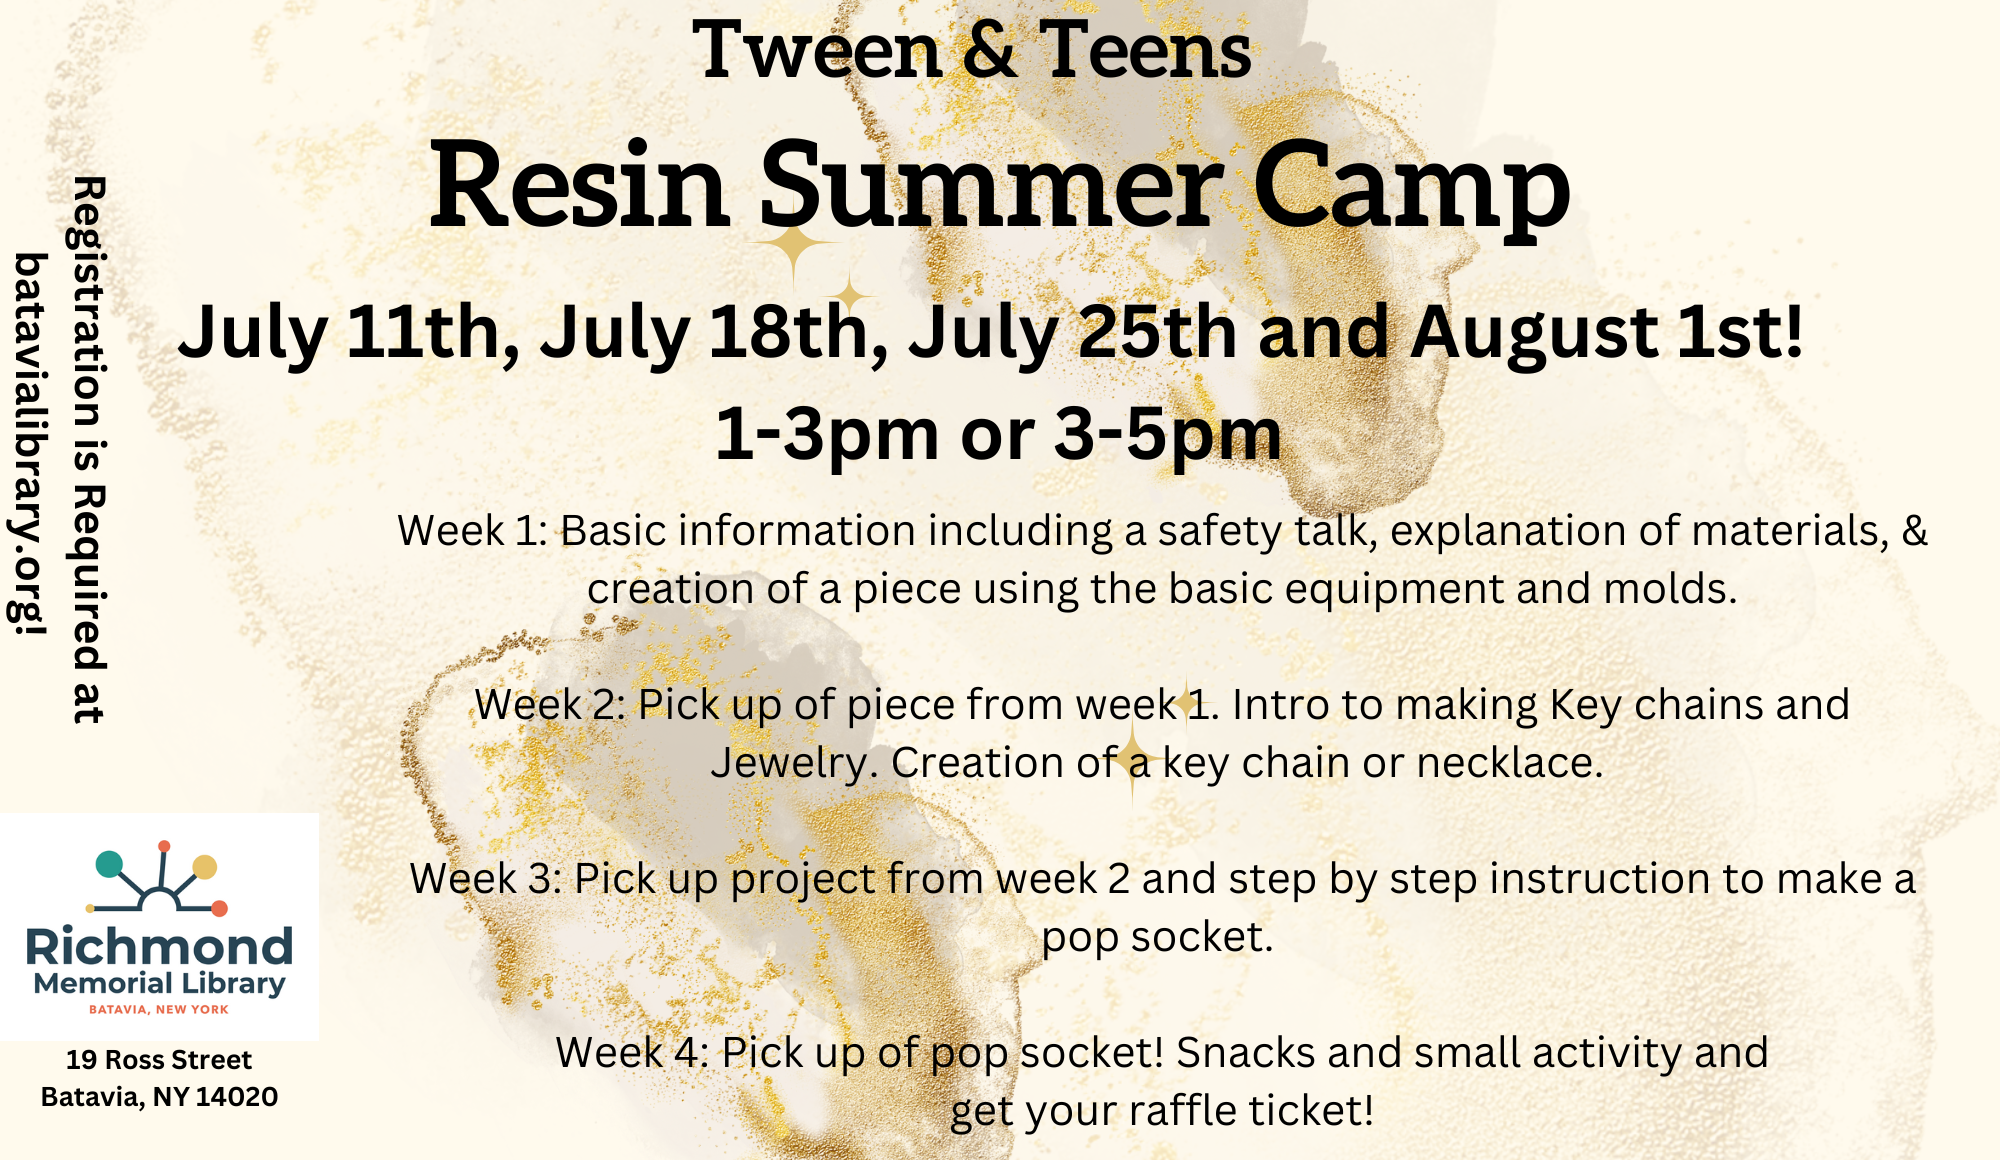 Tweens/Teens Programming: Resin Summer Camp! 